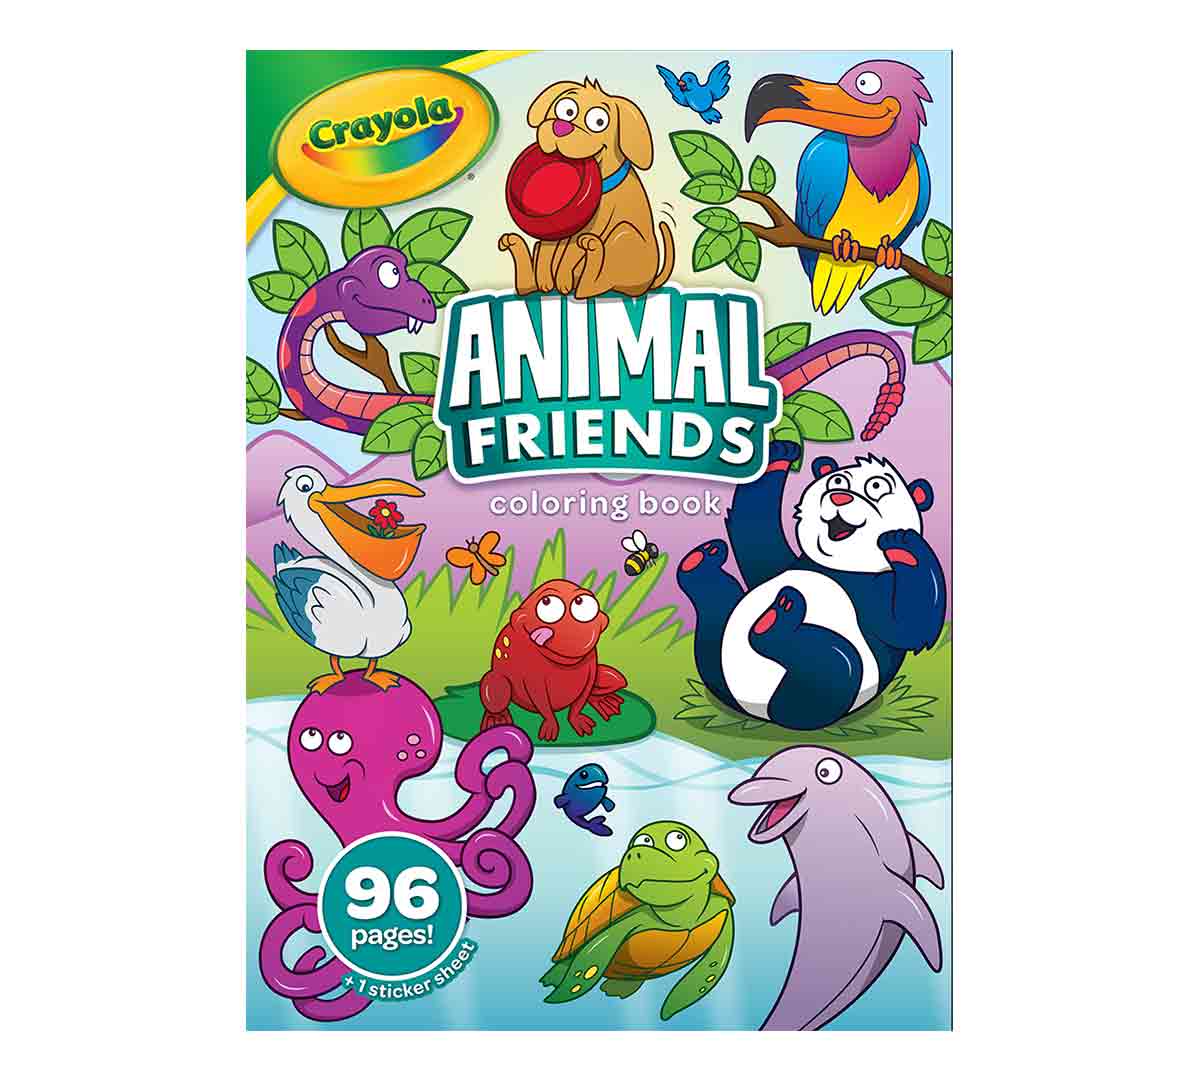 Animal Friends Coloring Book, 20 Pages   Crayola.com   Crayola